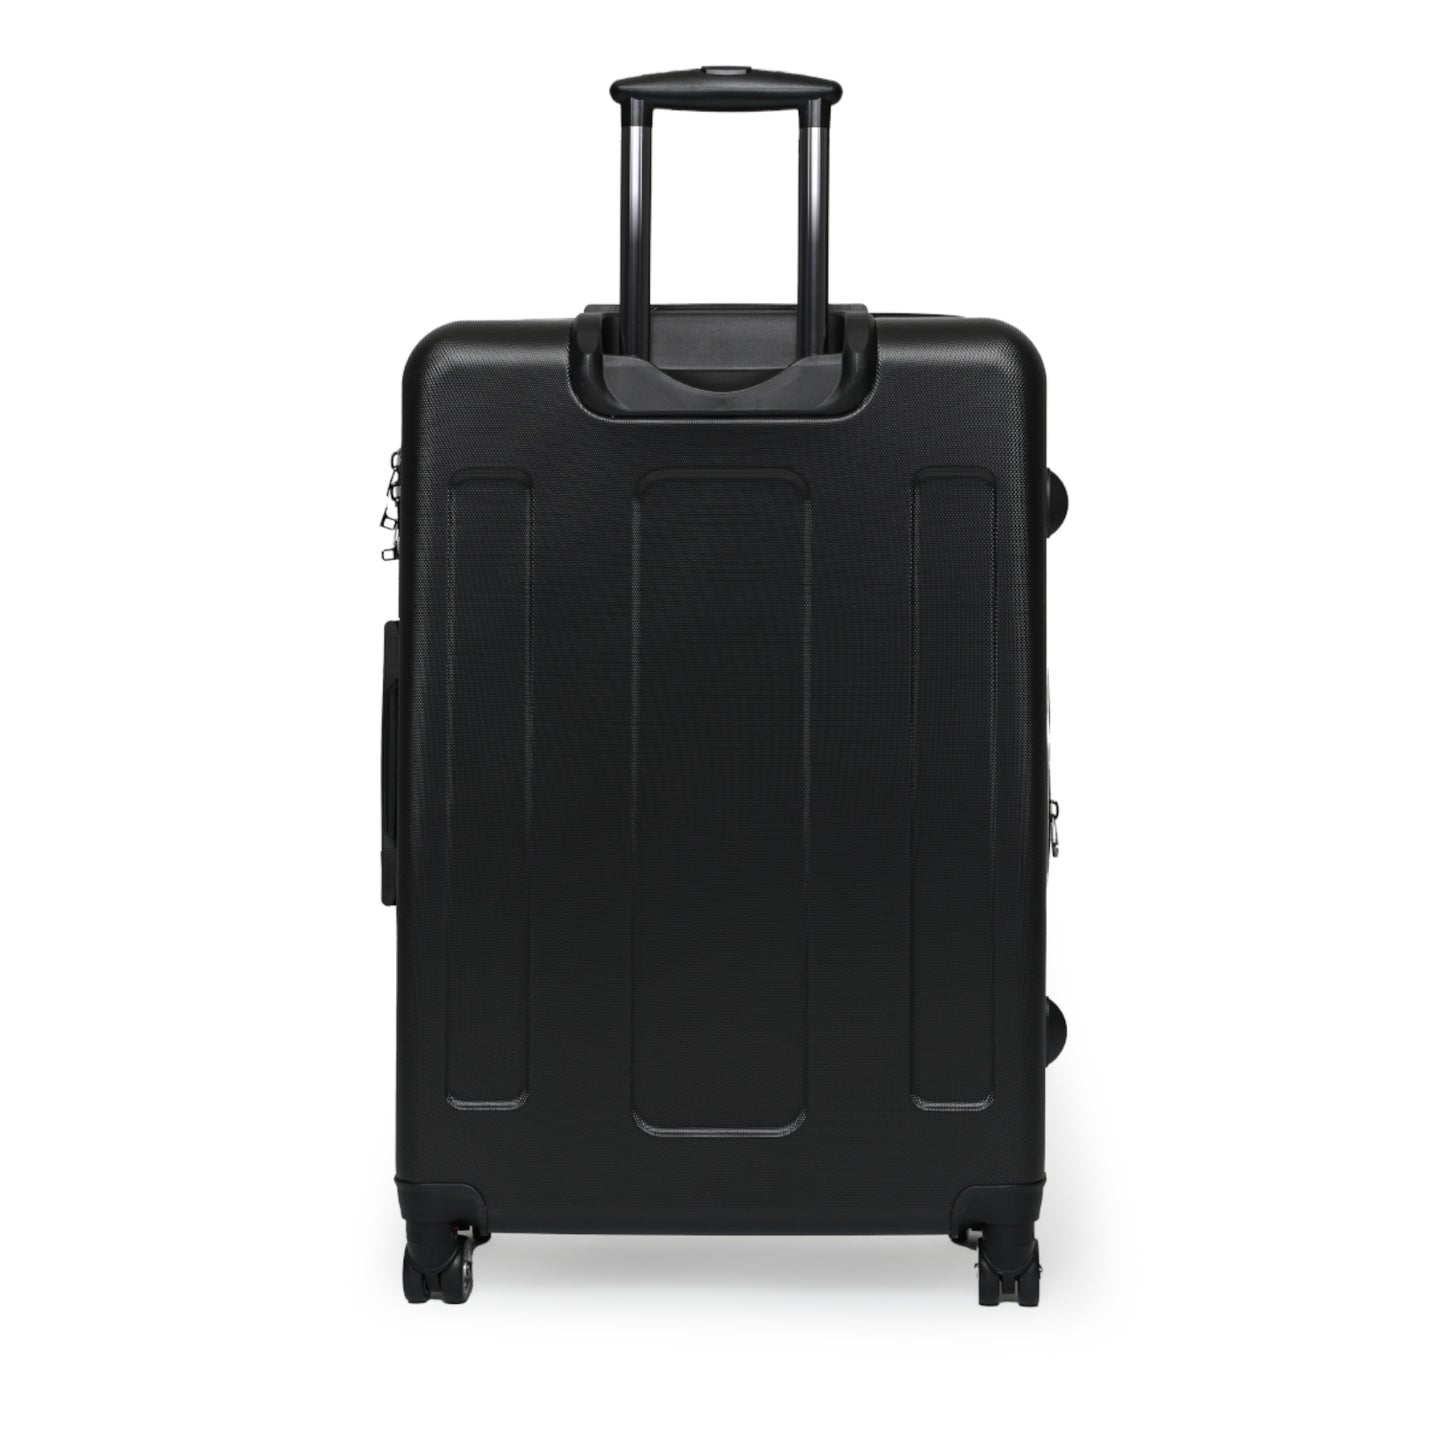 Mi/IRAWMA Suitcase